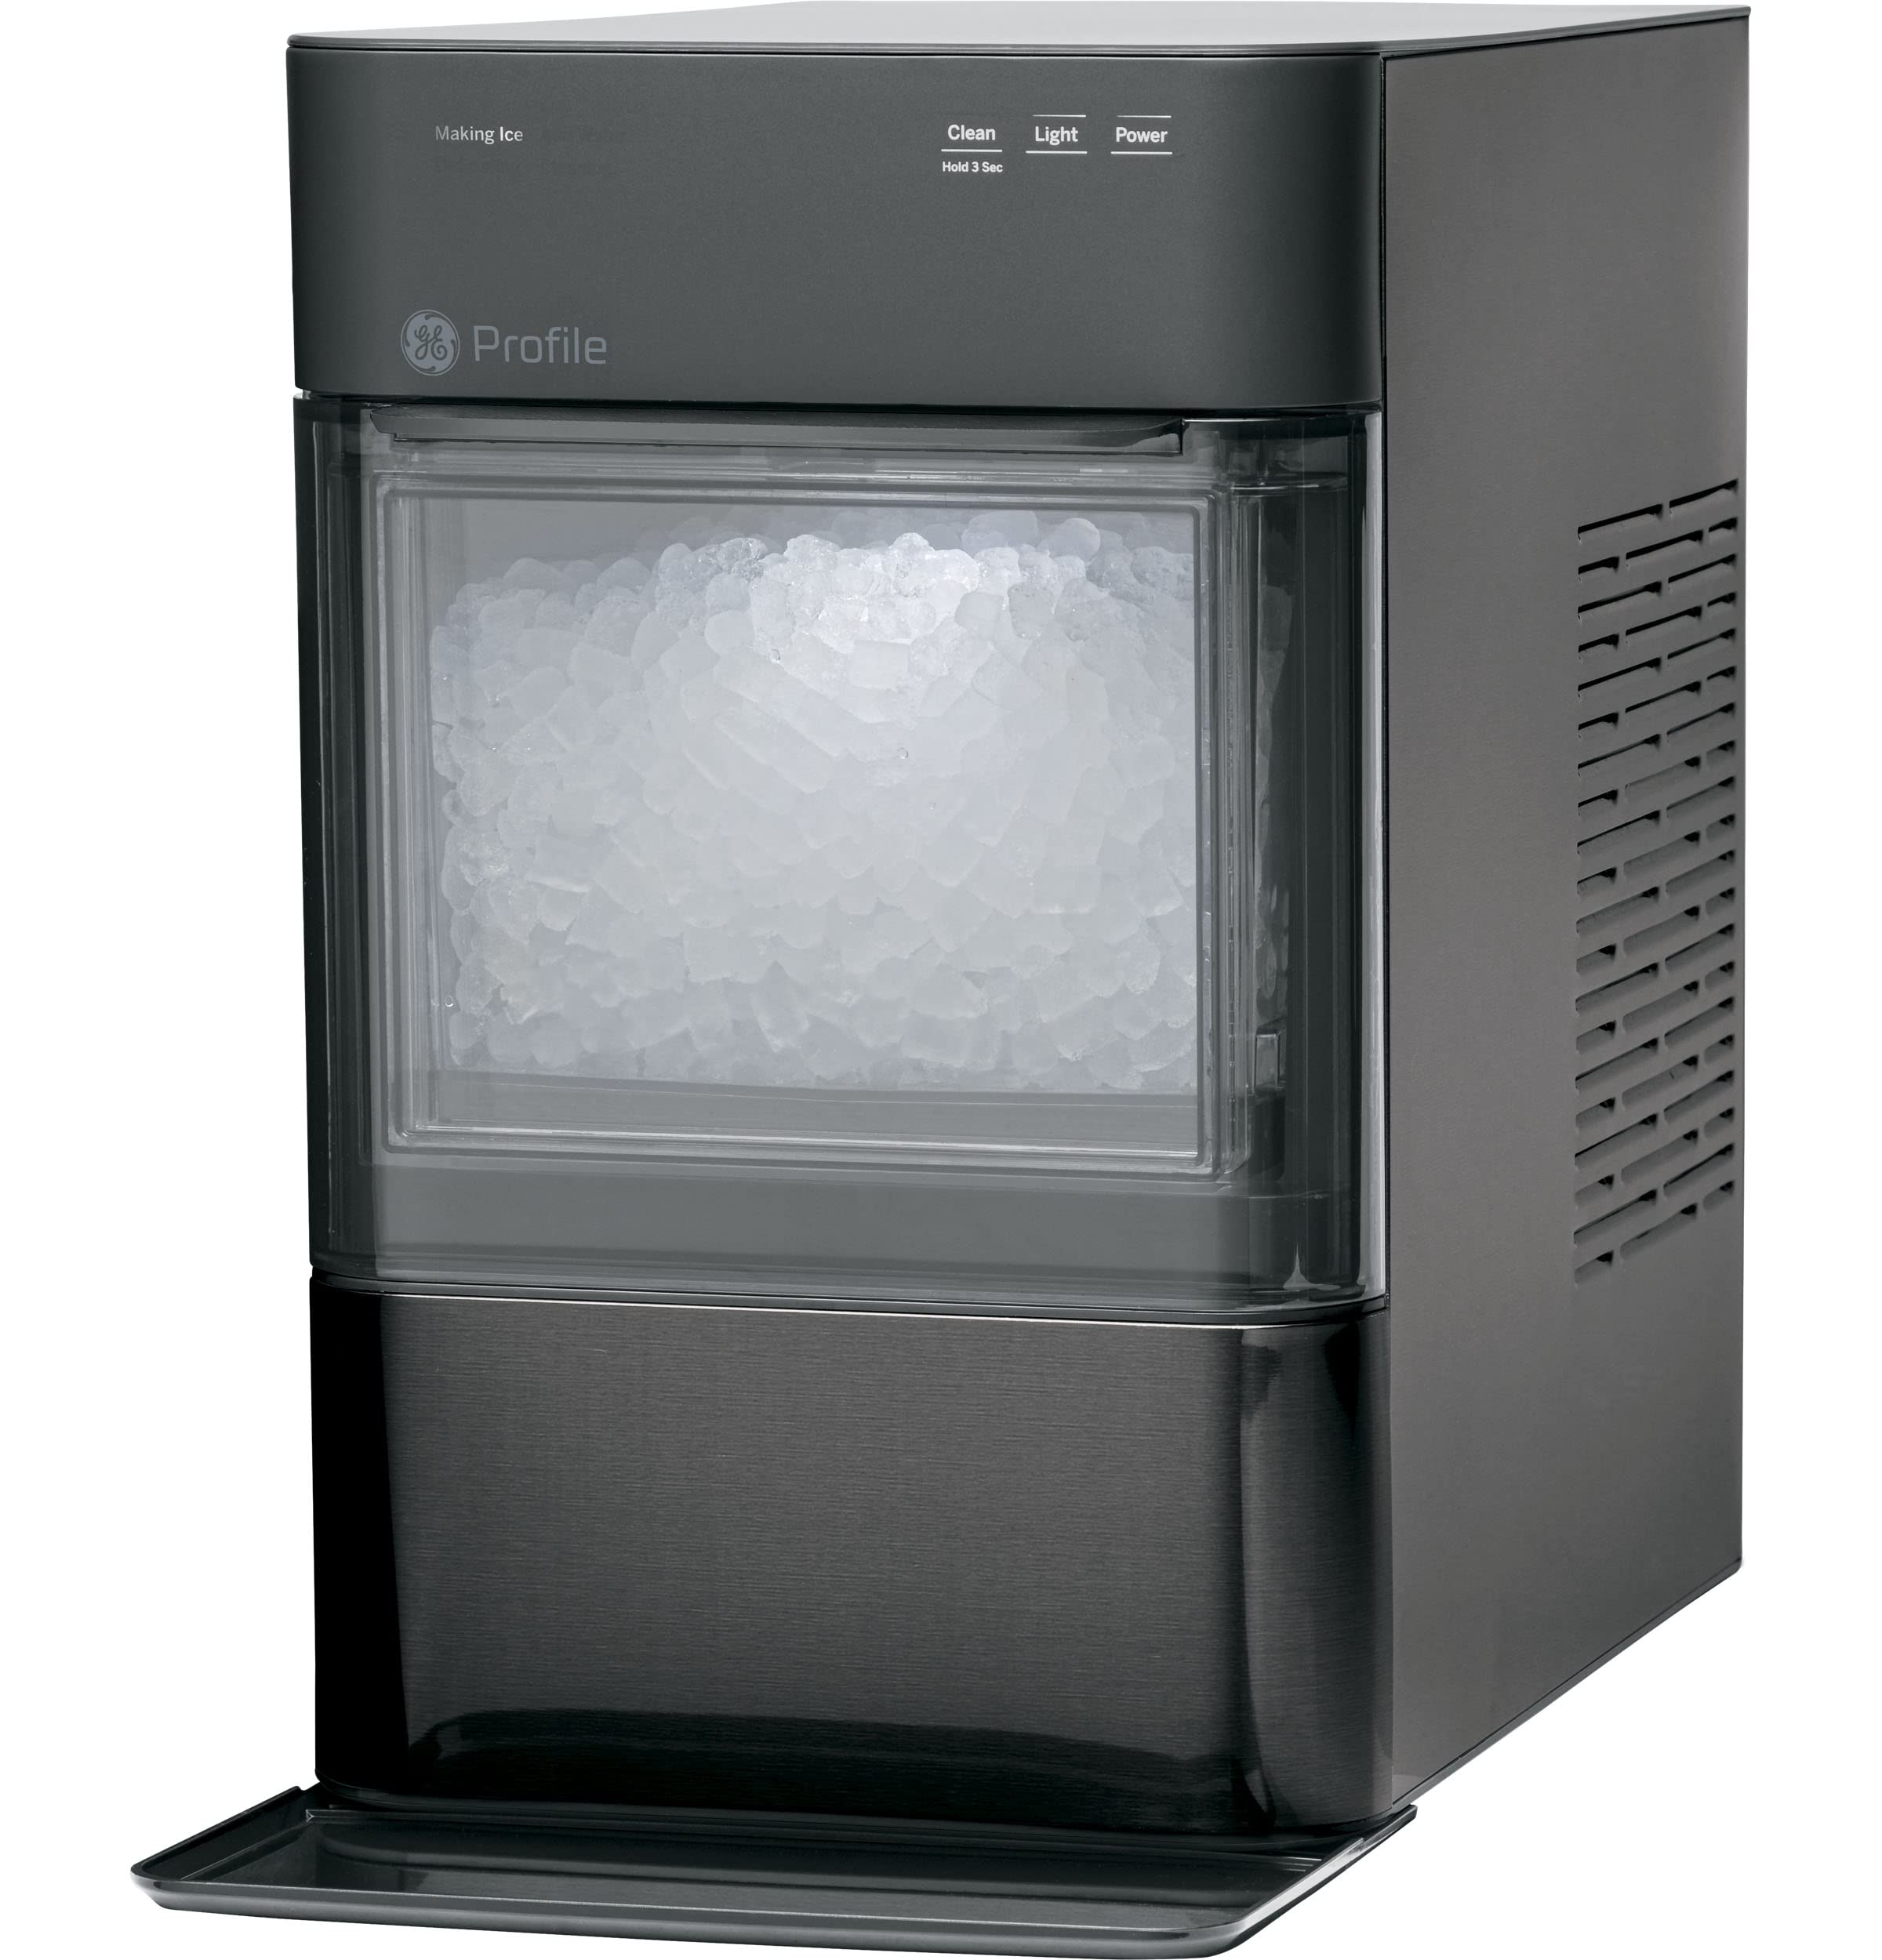 GE Profil Opale 2.0 | Machine à glaçons de comptoir | Machine à glace avec connectivité WiFi | Essentiels de la cuisine pour la maison intellinte | Inox noir